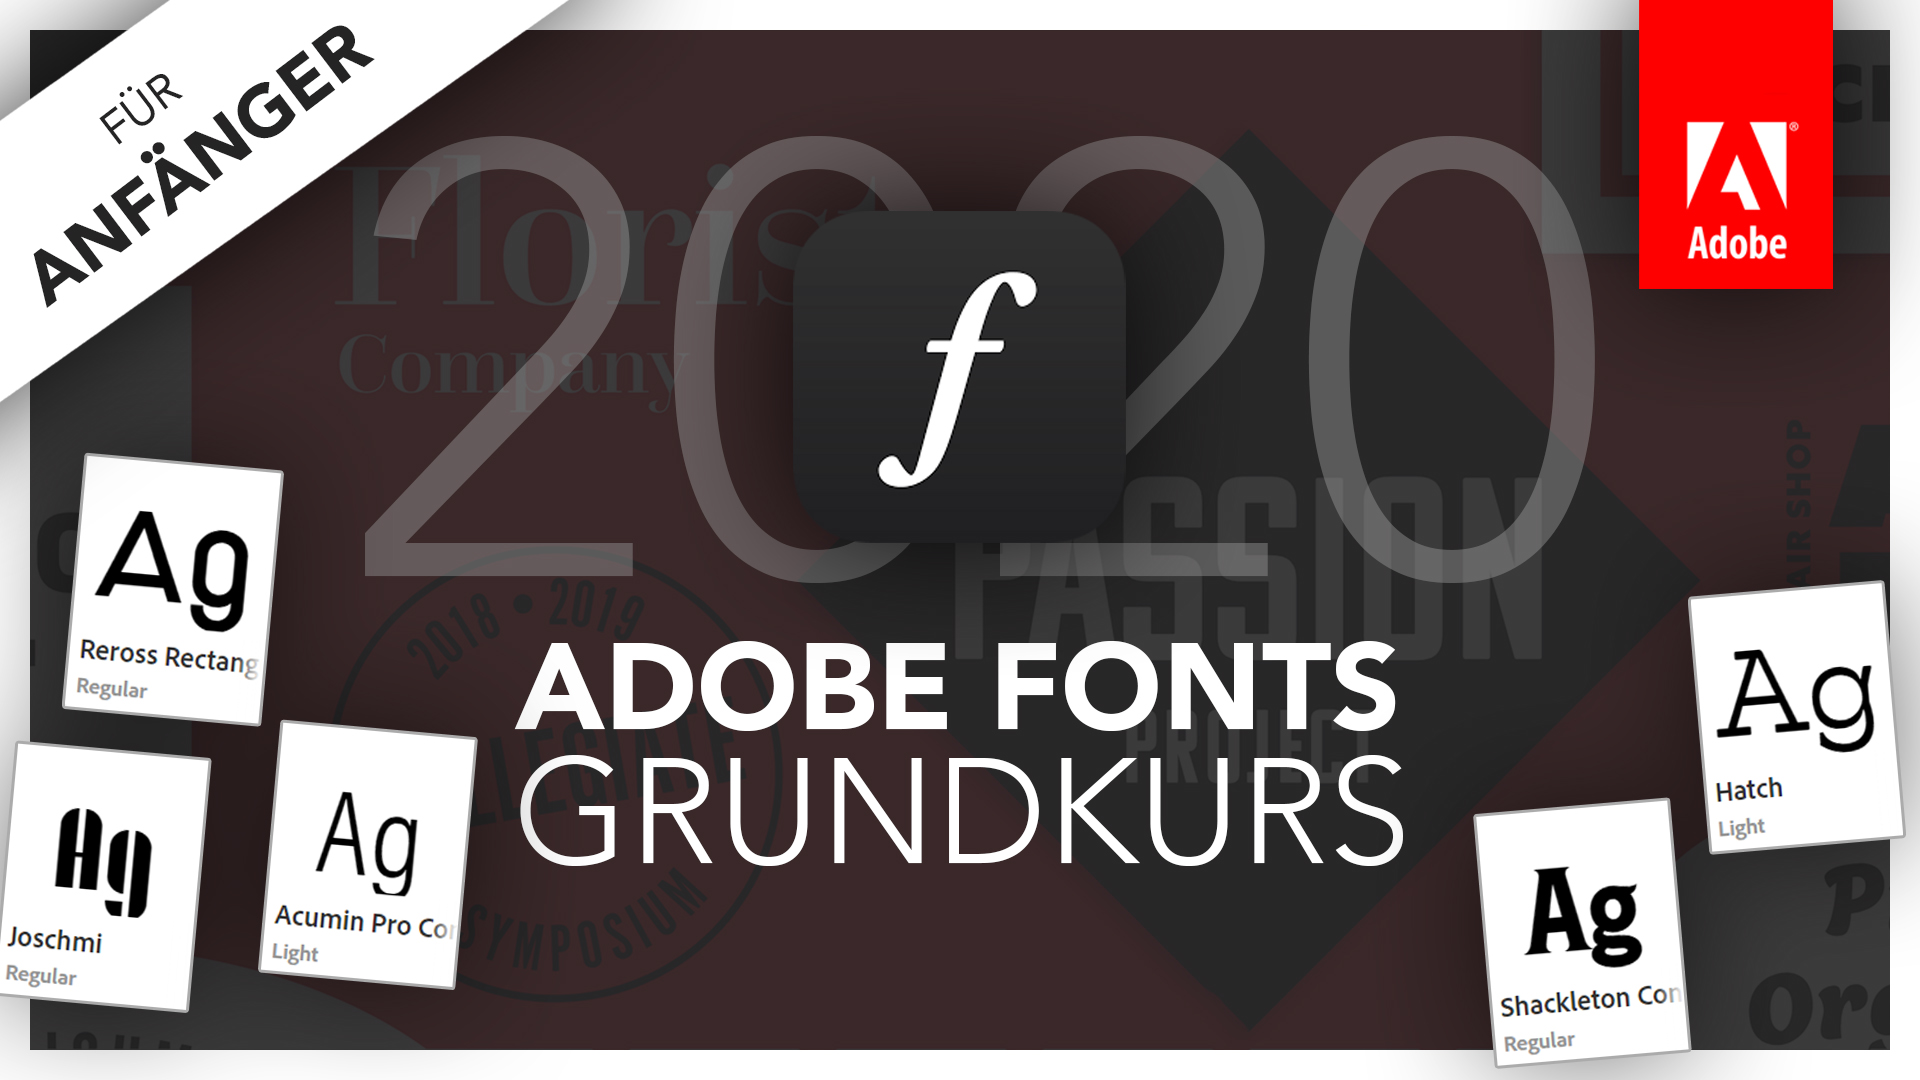 Adobe Fonts 2020 (Grundkurs für Anfänger) Deutsch